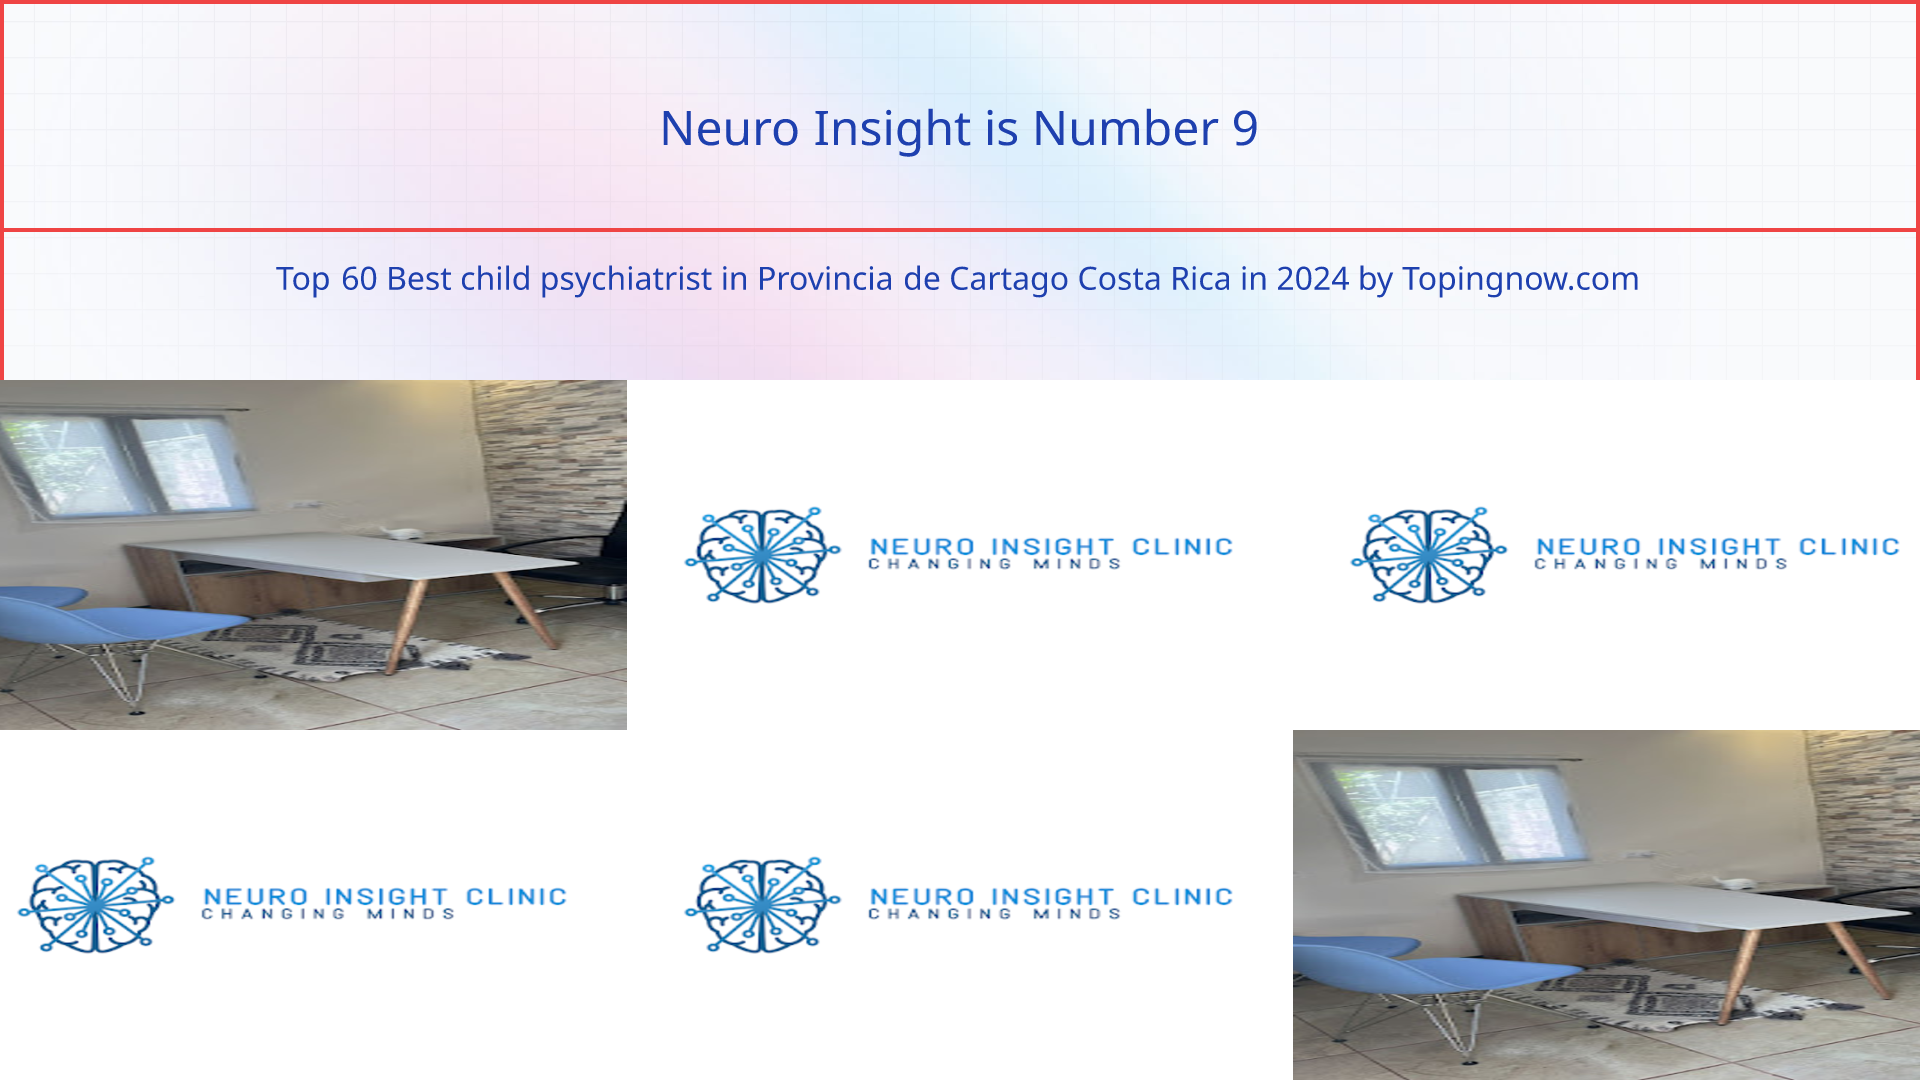 Neuro Insight: Top 60 Best child psychiatrist in Provincia de Cartago Costa Rica in 2024